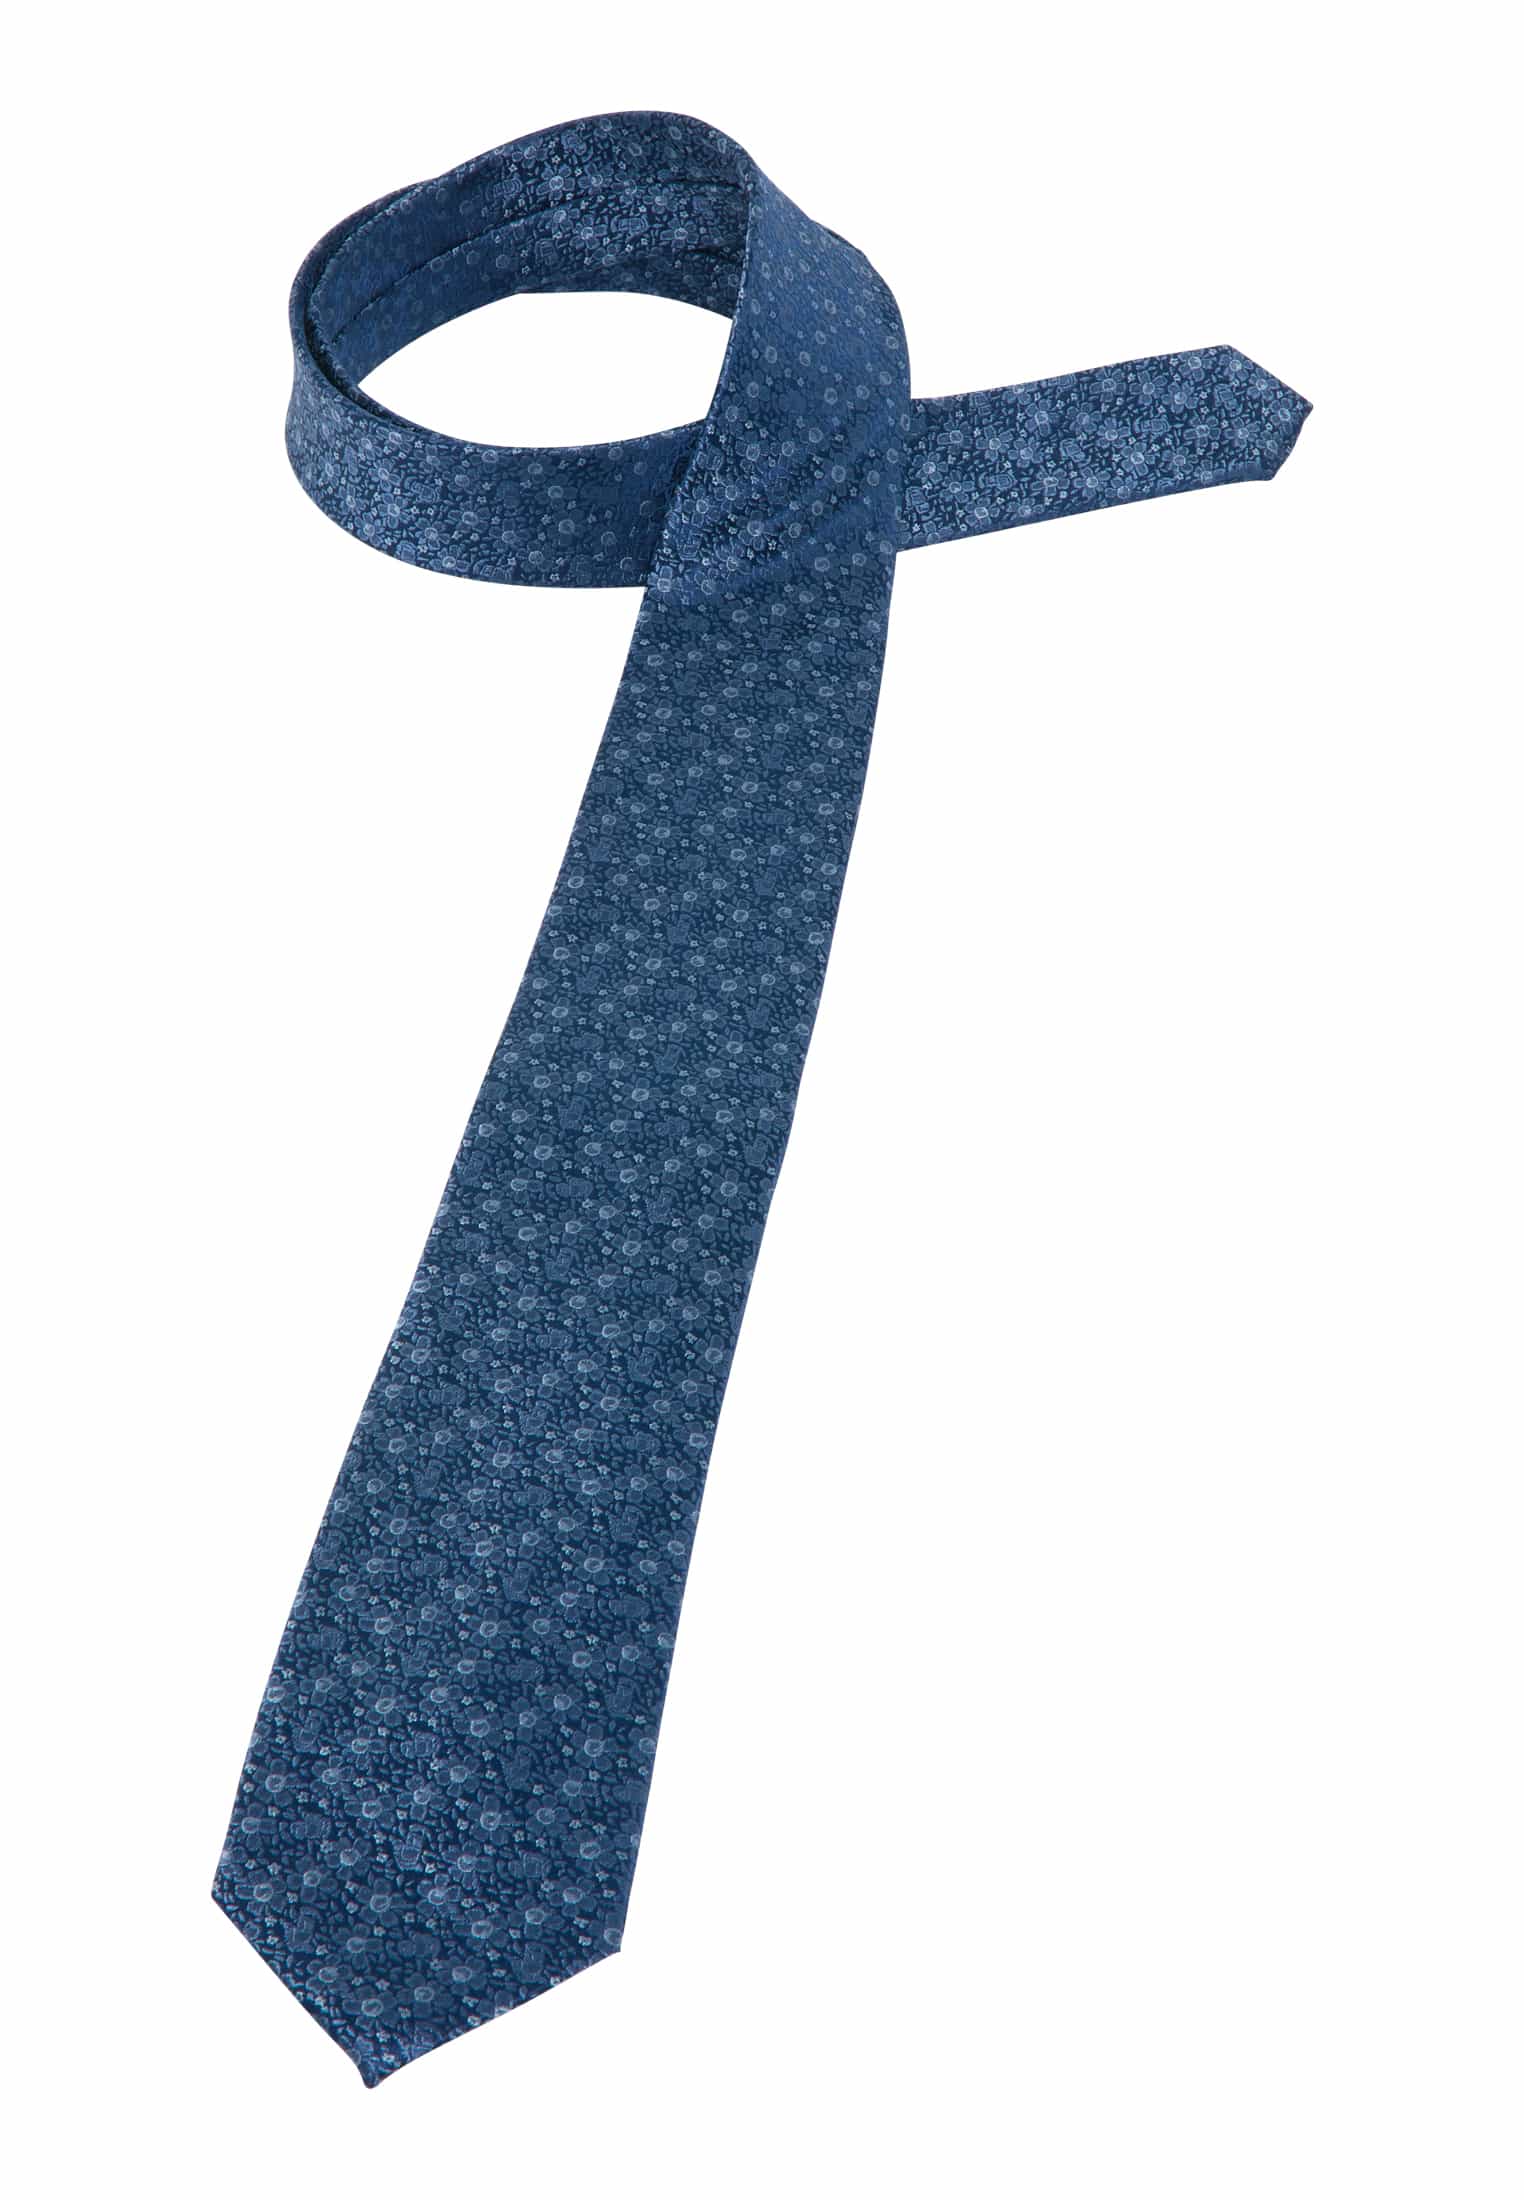 | Krawatte blau 142 | 1AC01877-01-41-142 gemustert | blau in